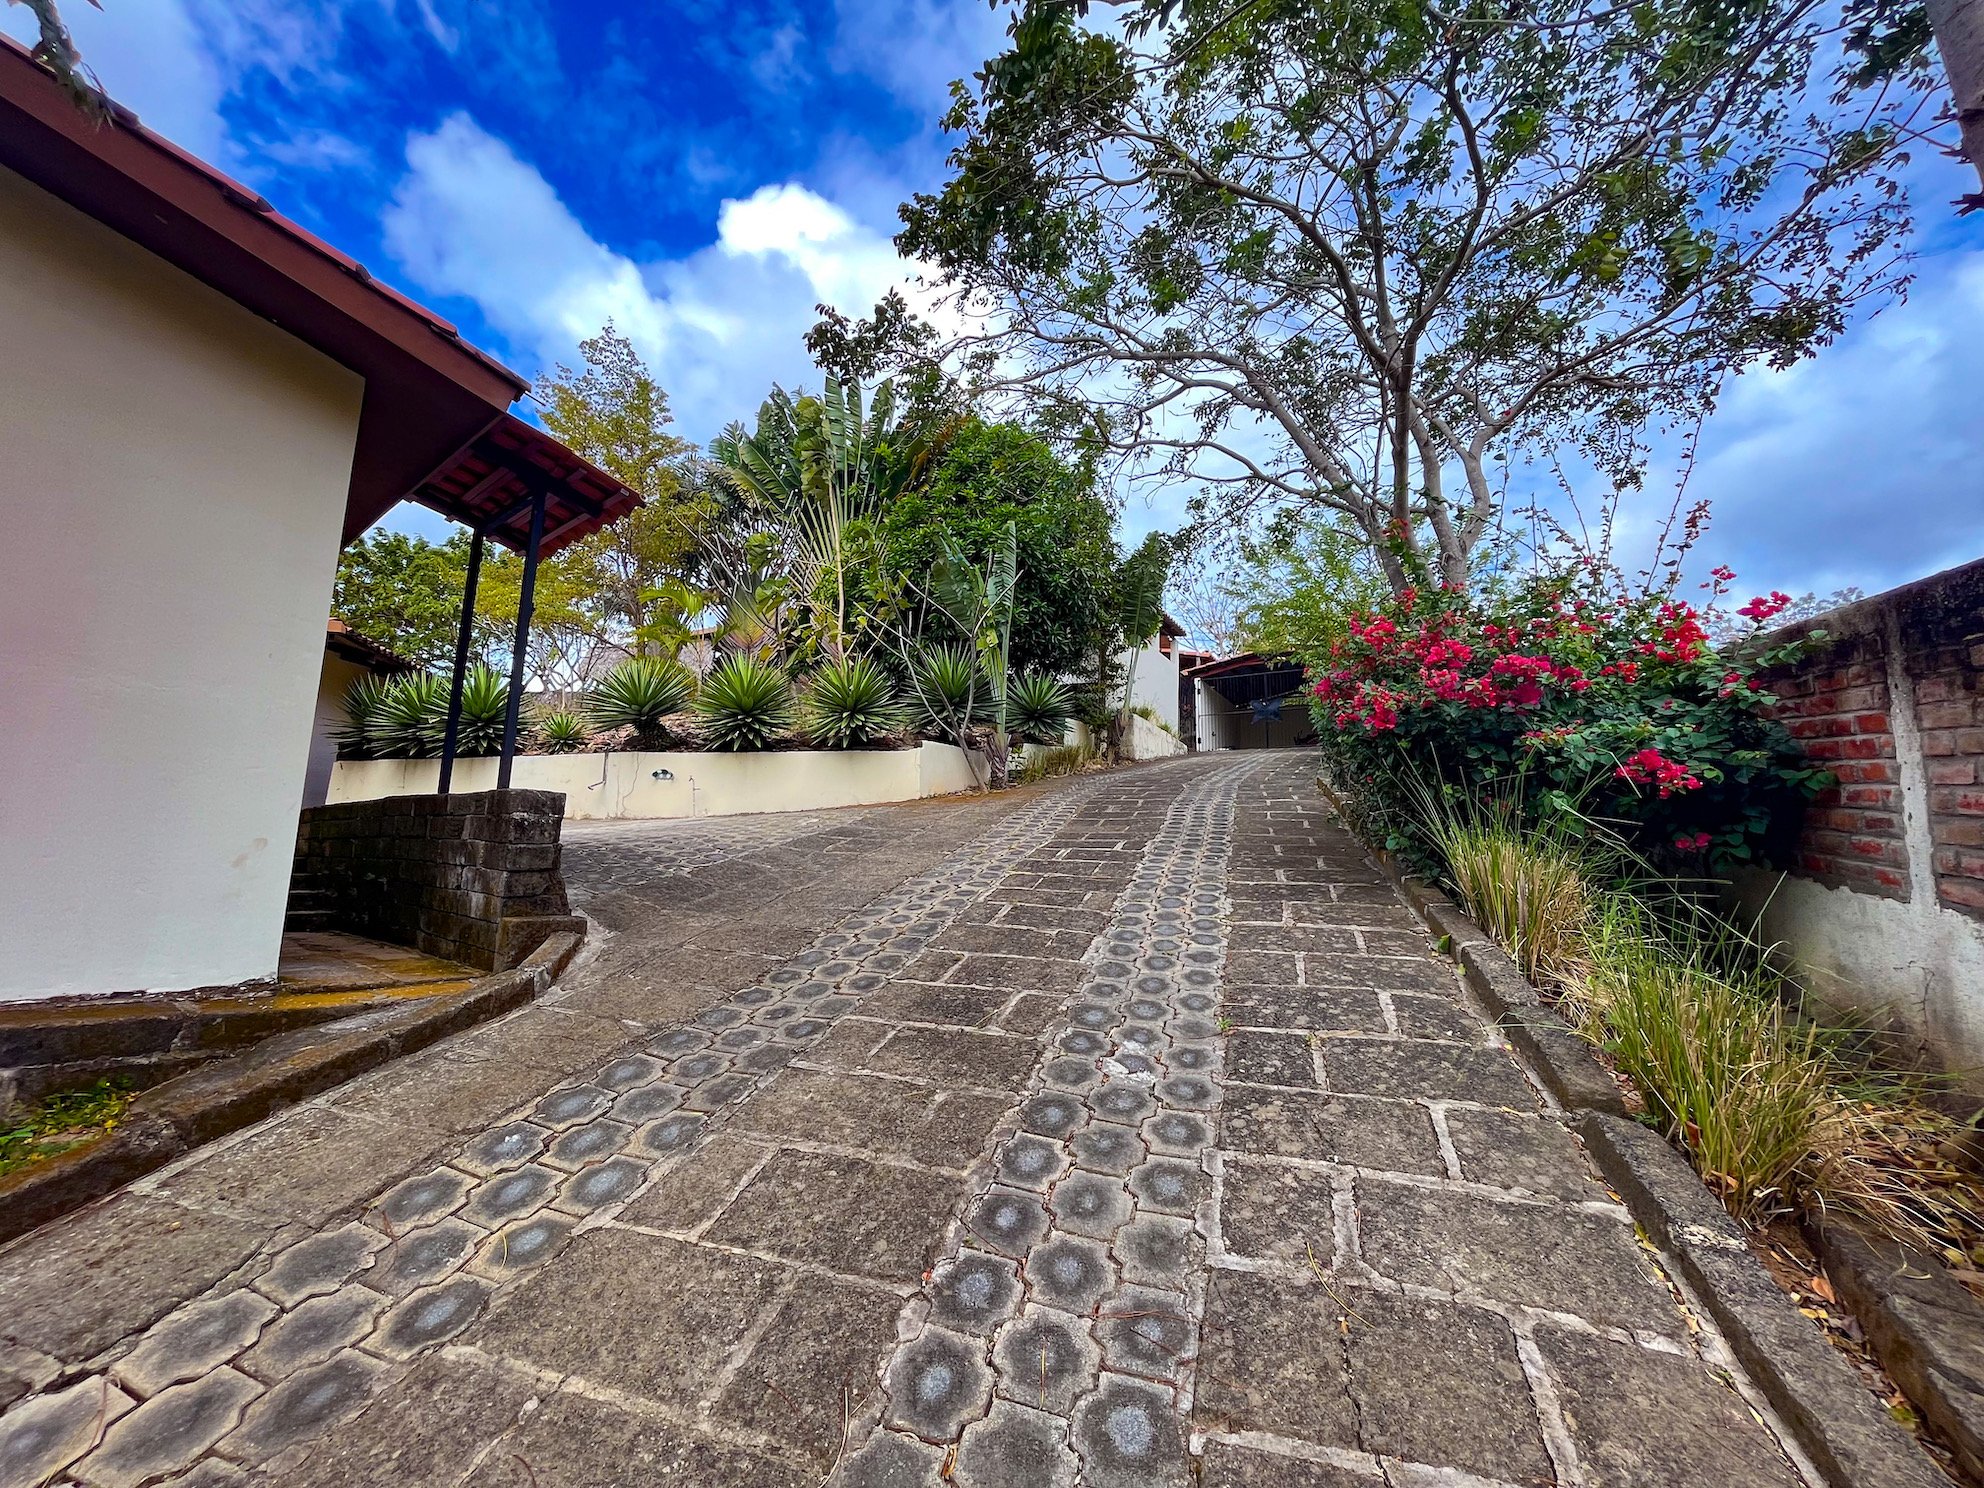 Large Home For Sale San Juan Del Sur Property Real Estate Nicaragua 2023 29.JPEG